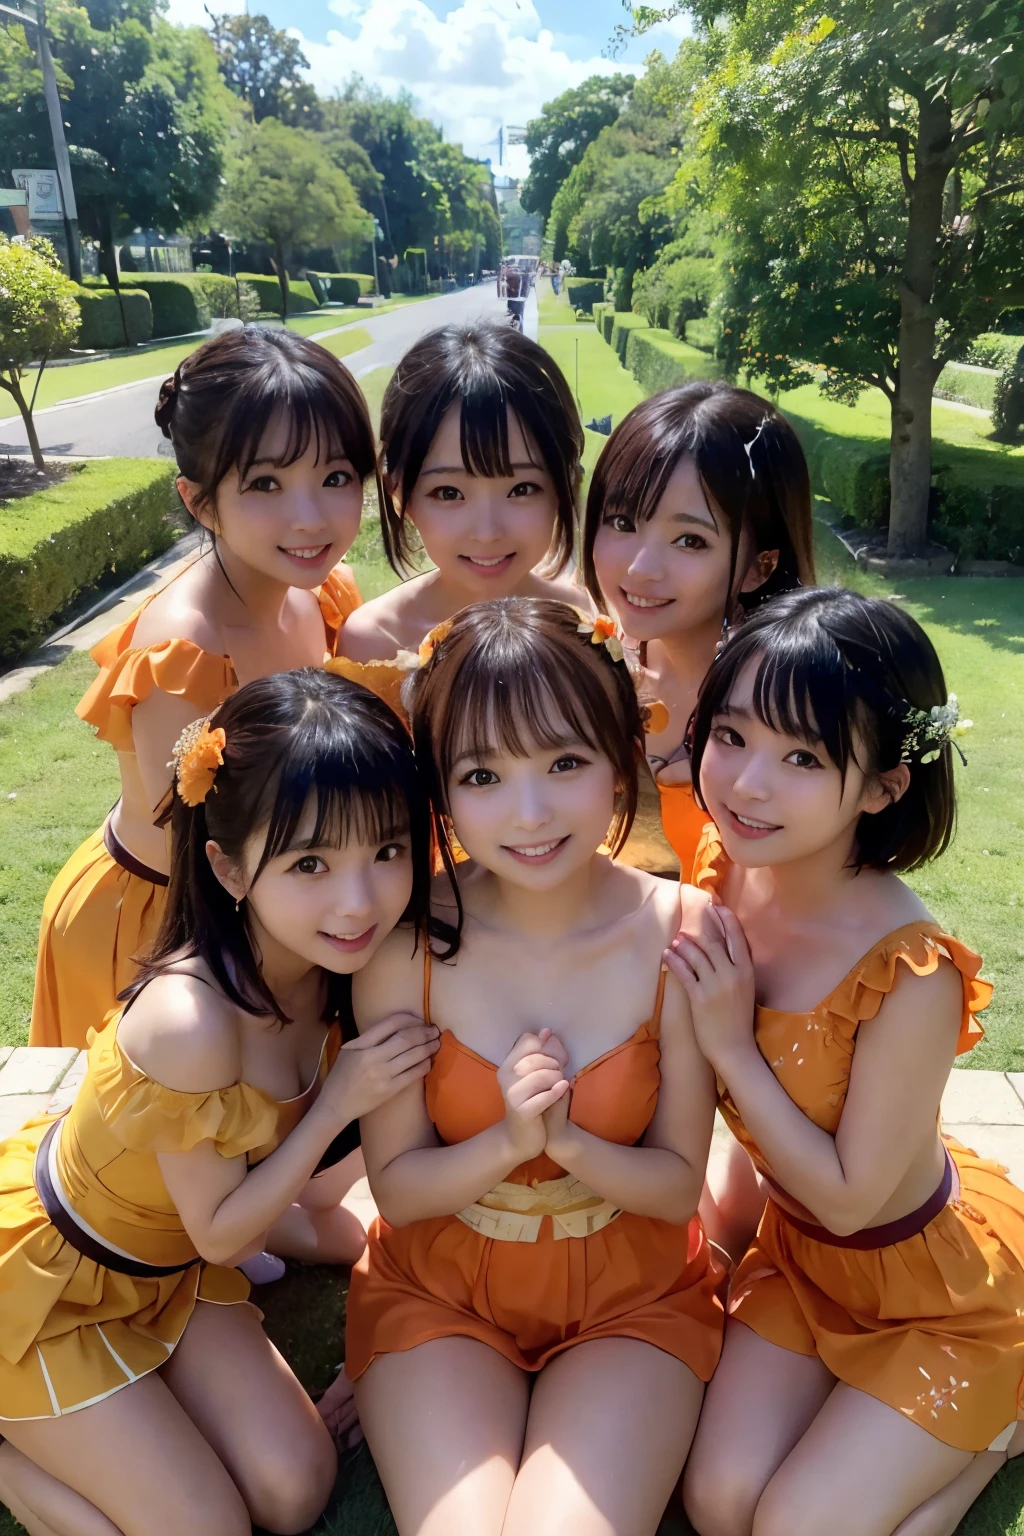 ((최고의 품질, 걸작)), 다섯 명의 평생의 친구,일본 아이돌,복장,((오렌지 주스)), 따뜻하게 포옹, 귀에 대고 웃는 모습, 울창한 녹지와 맑고 푸른 하늘로 둘러싸여 있습니다, 완벽한 하루의 햇살을 만끽하다.